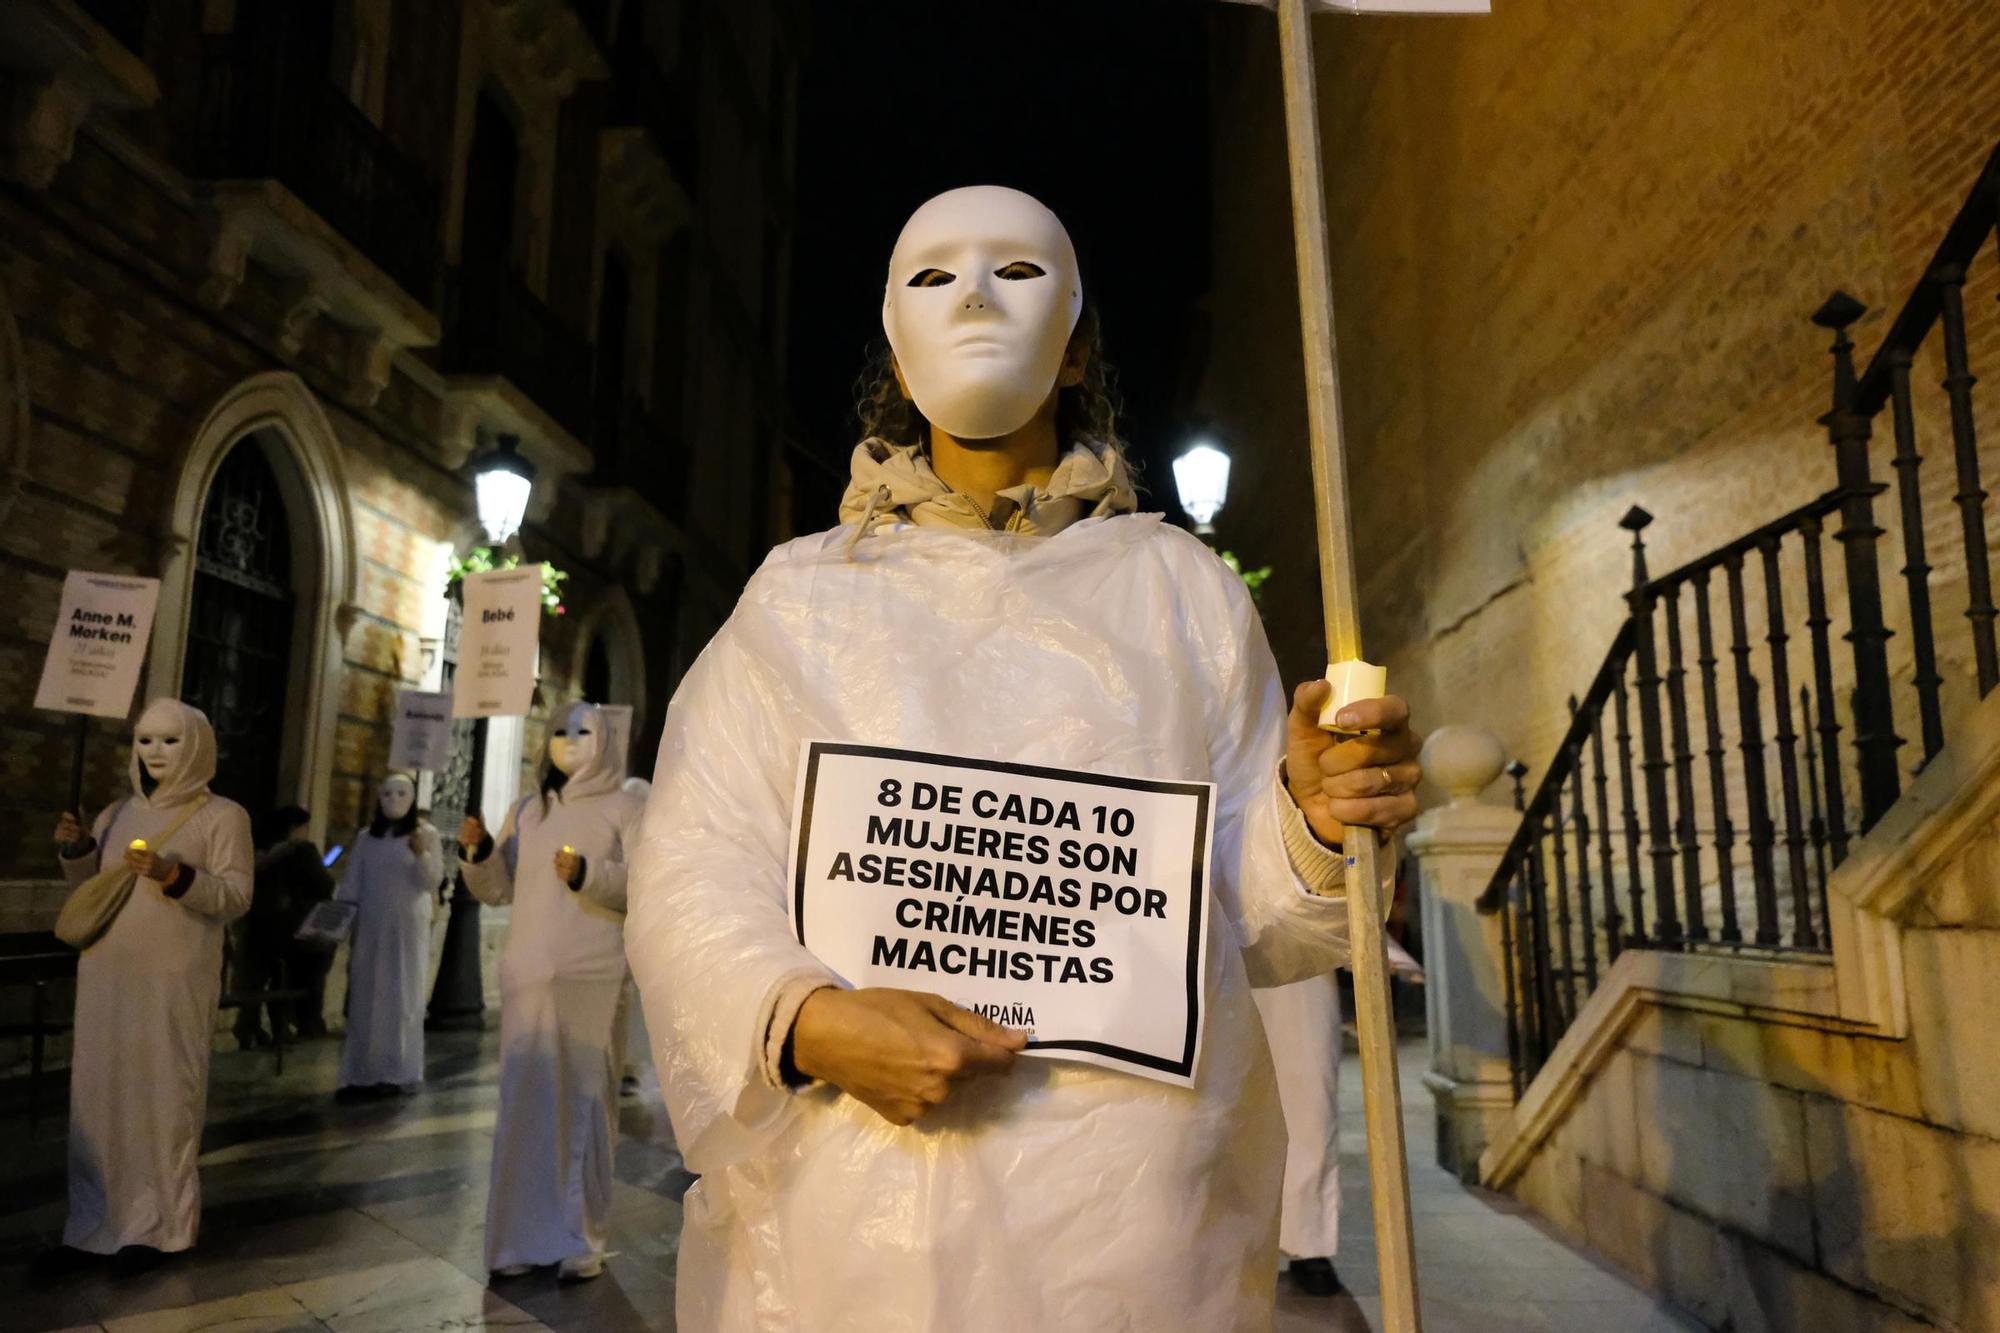 La marcha por el 8M en Málaga, en imágenes